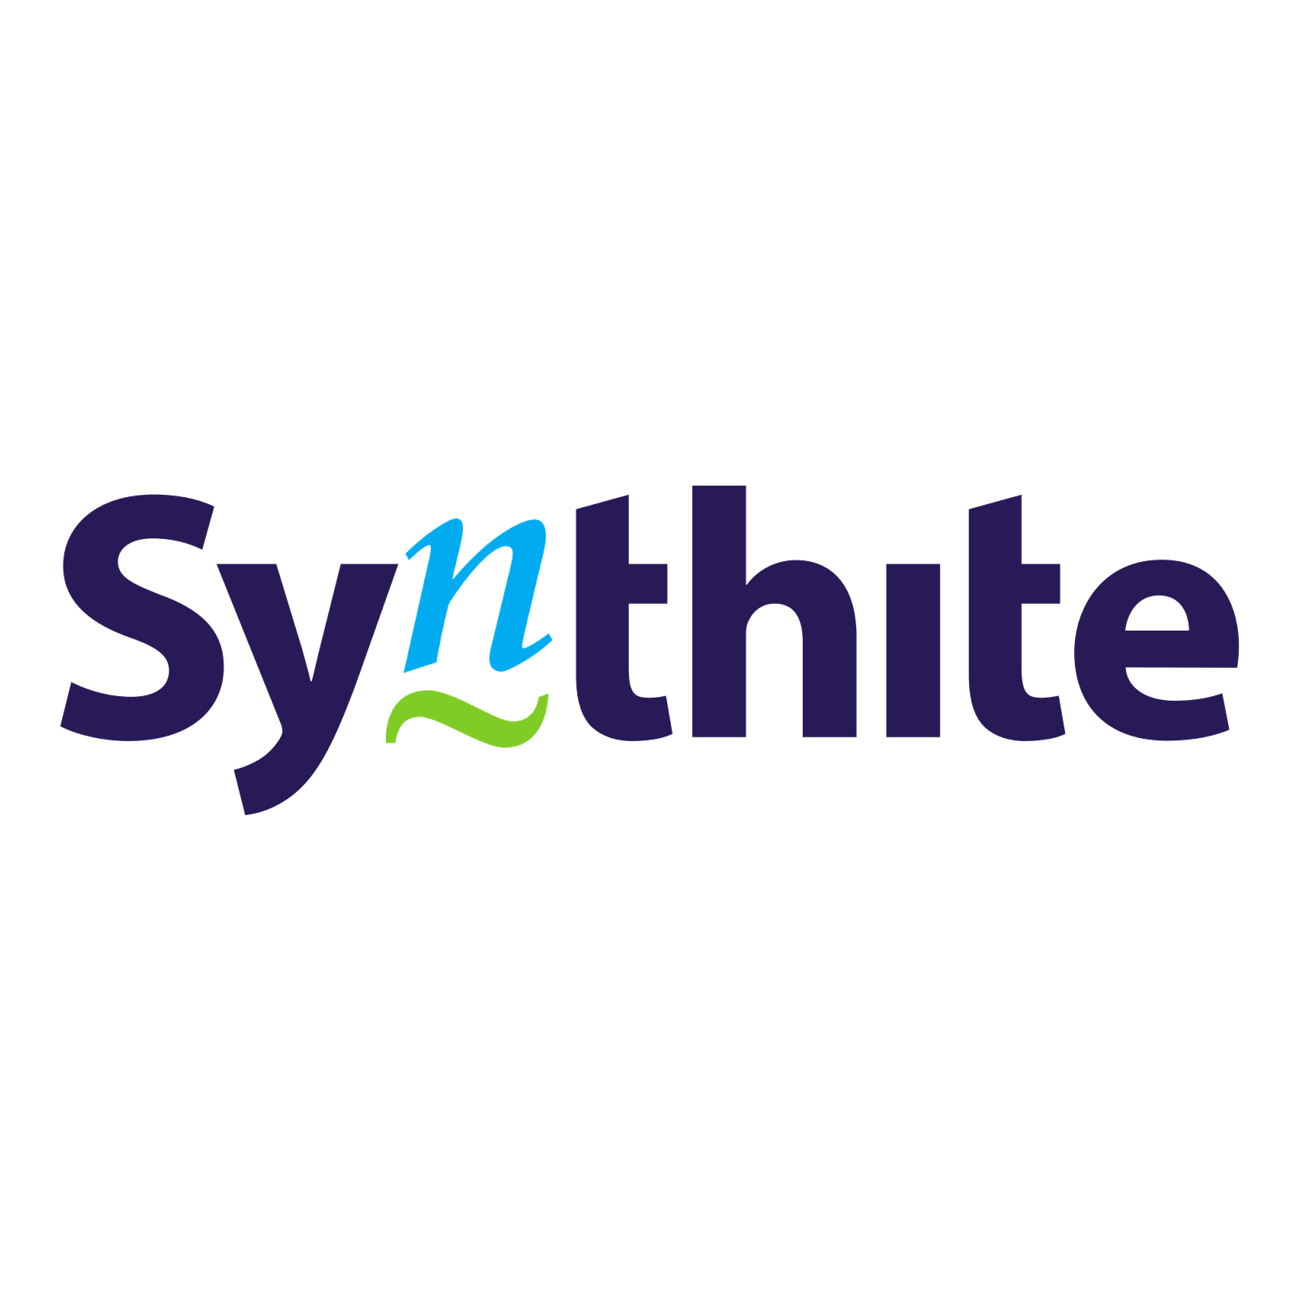 Synthite logo